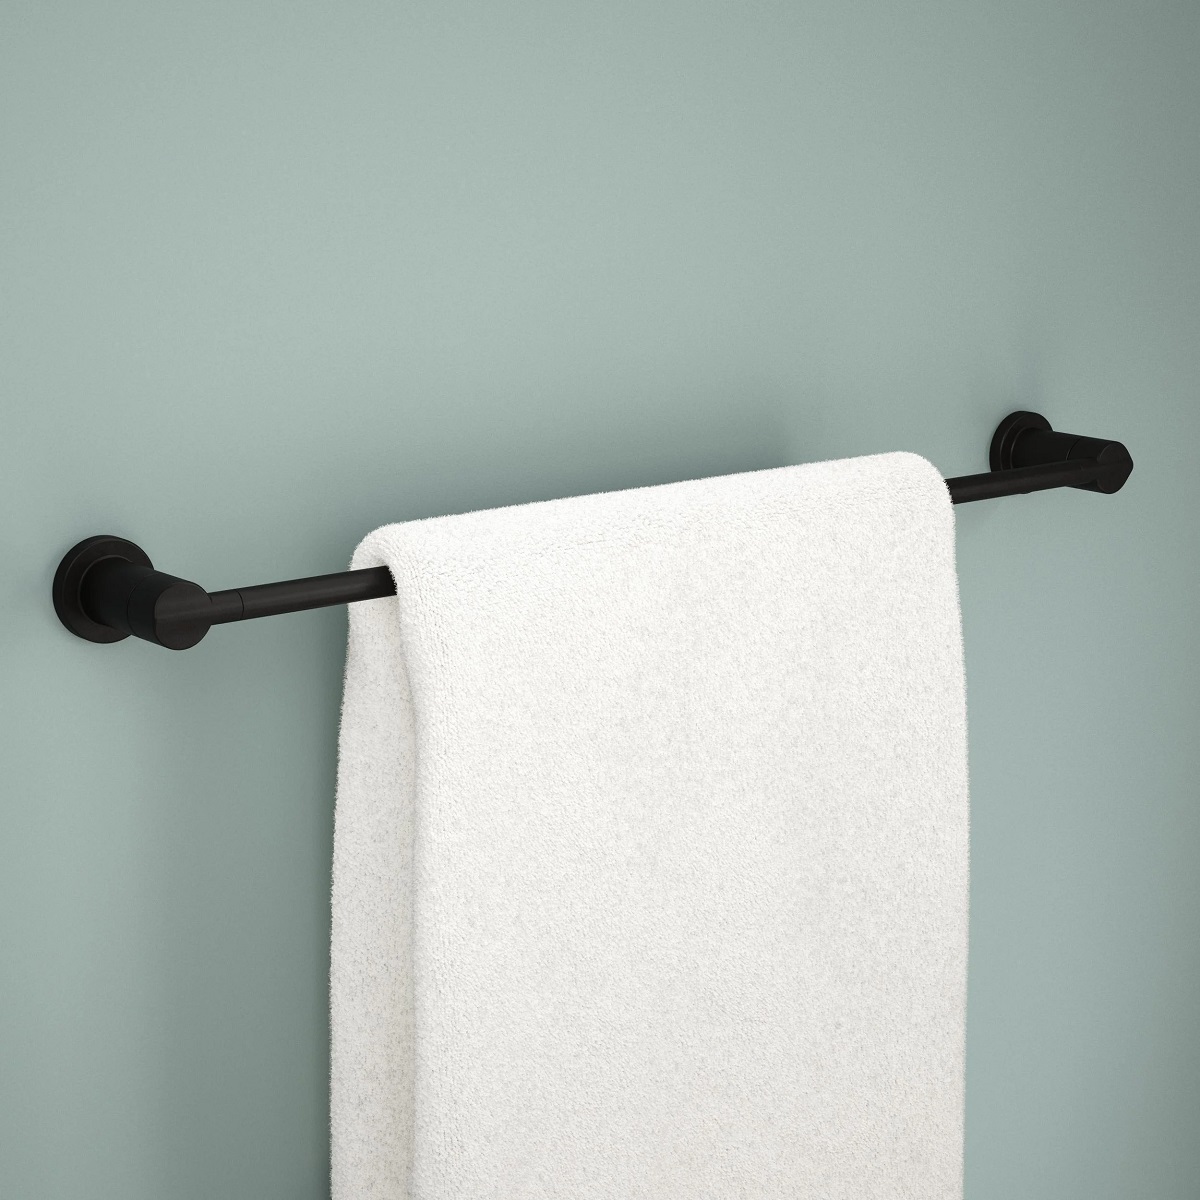 How To Remove Delta Towel Bar